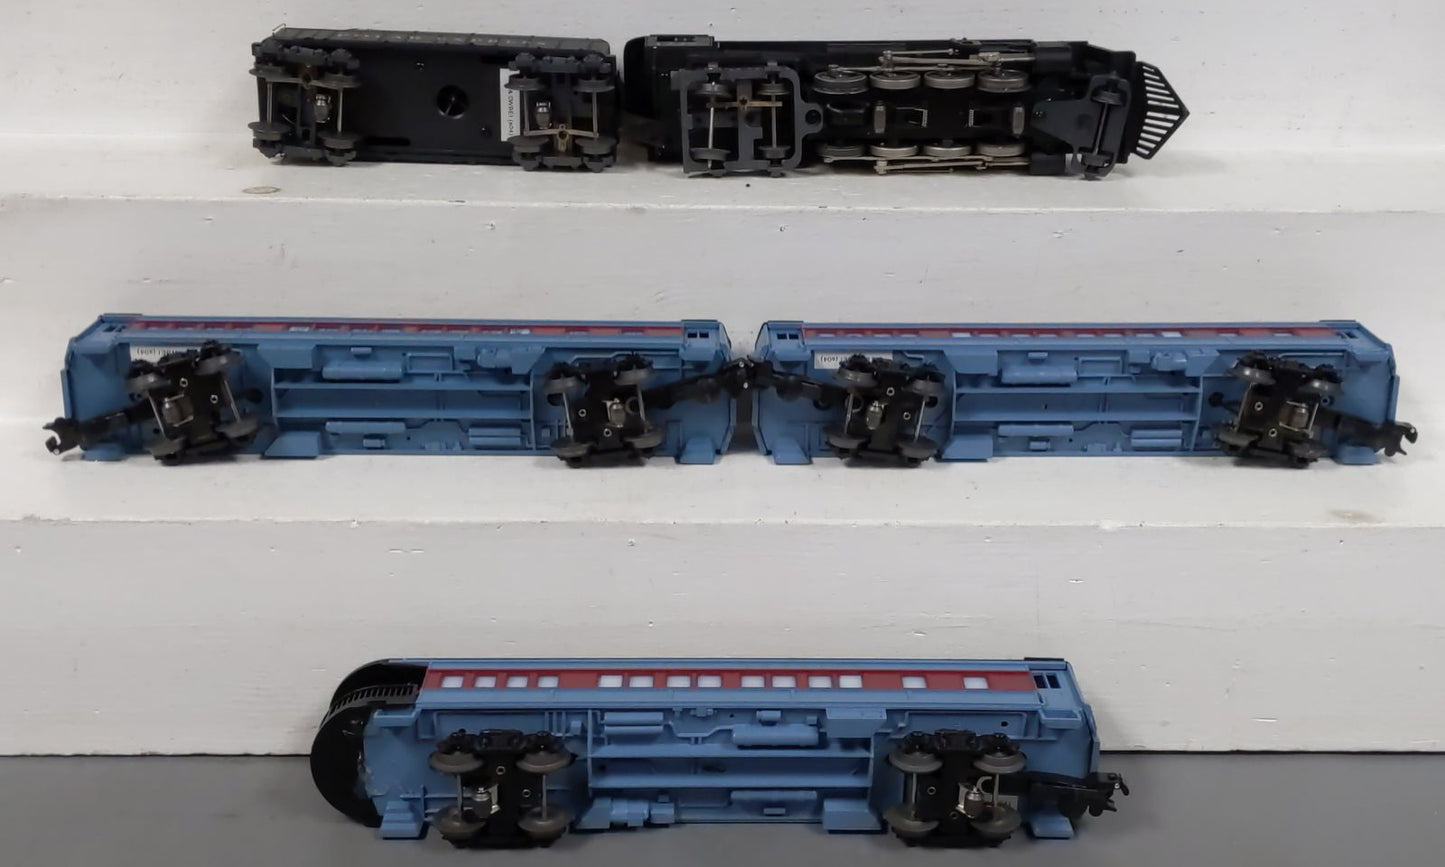 Lionel 6-31960 O Gauge The Polar Express Steam Train Set (No Track) EX/Box